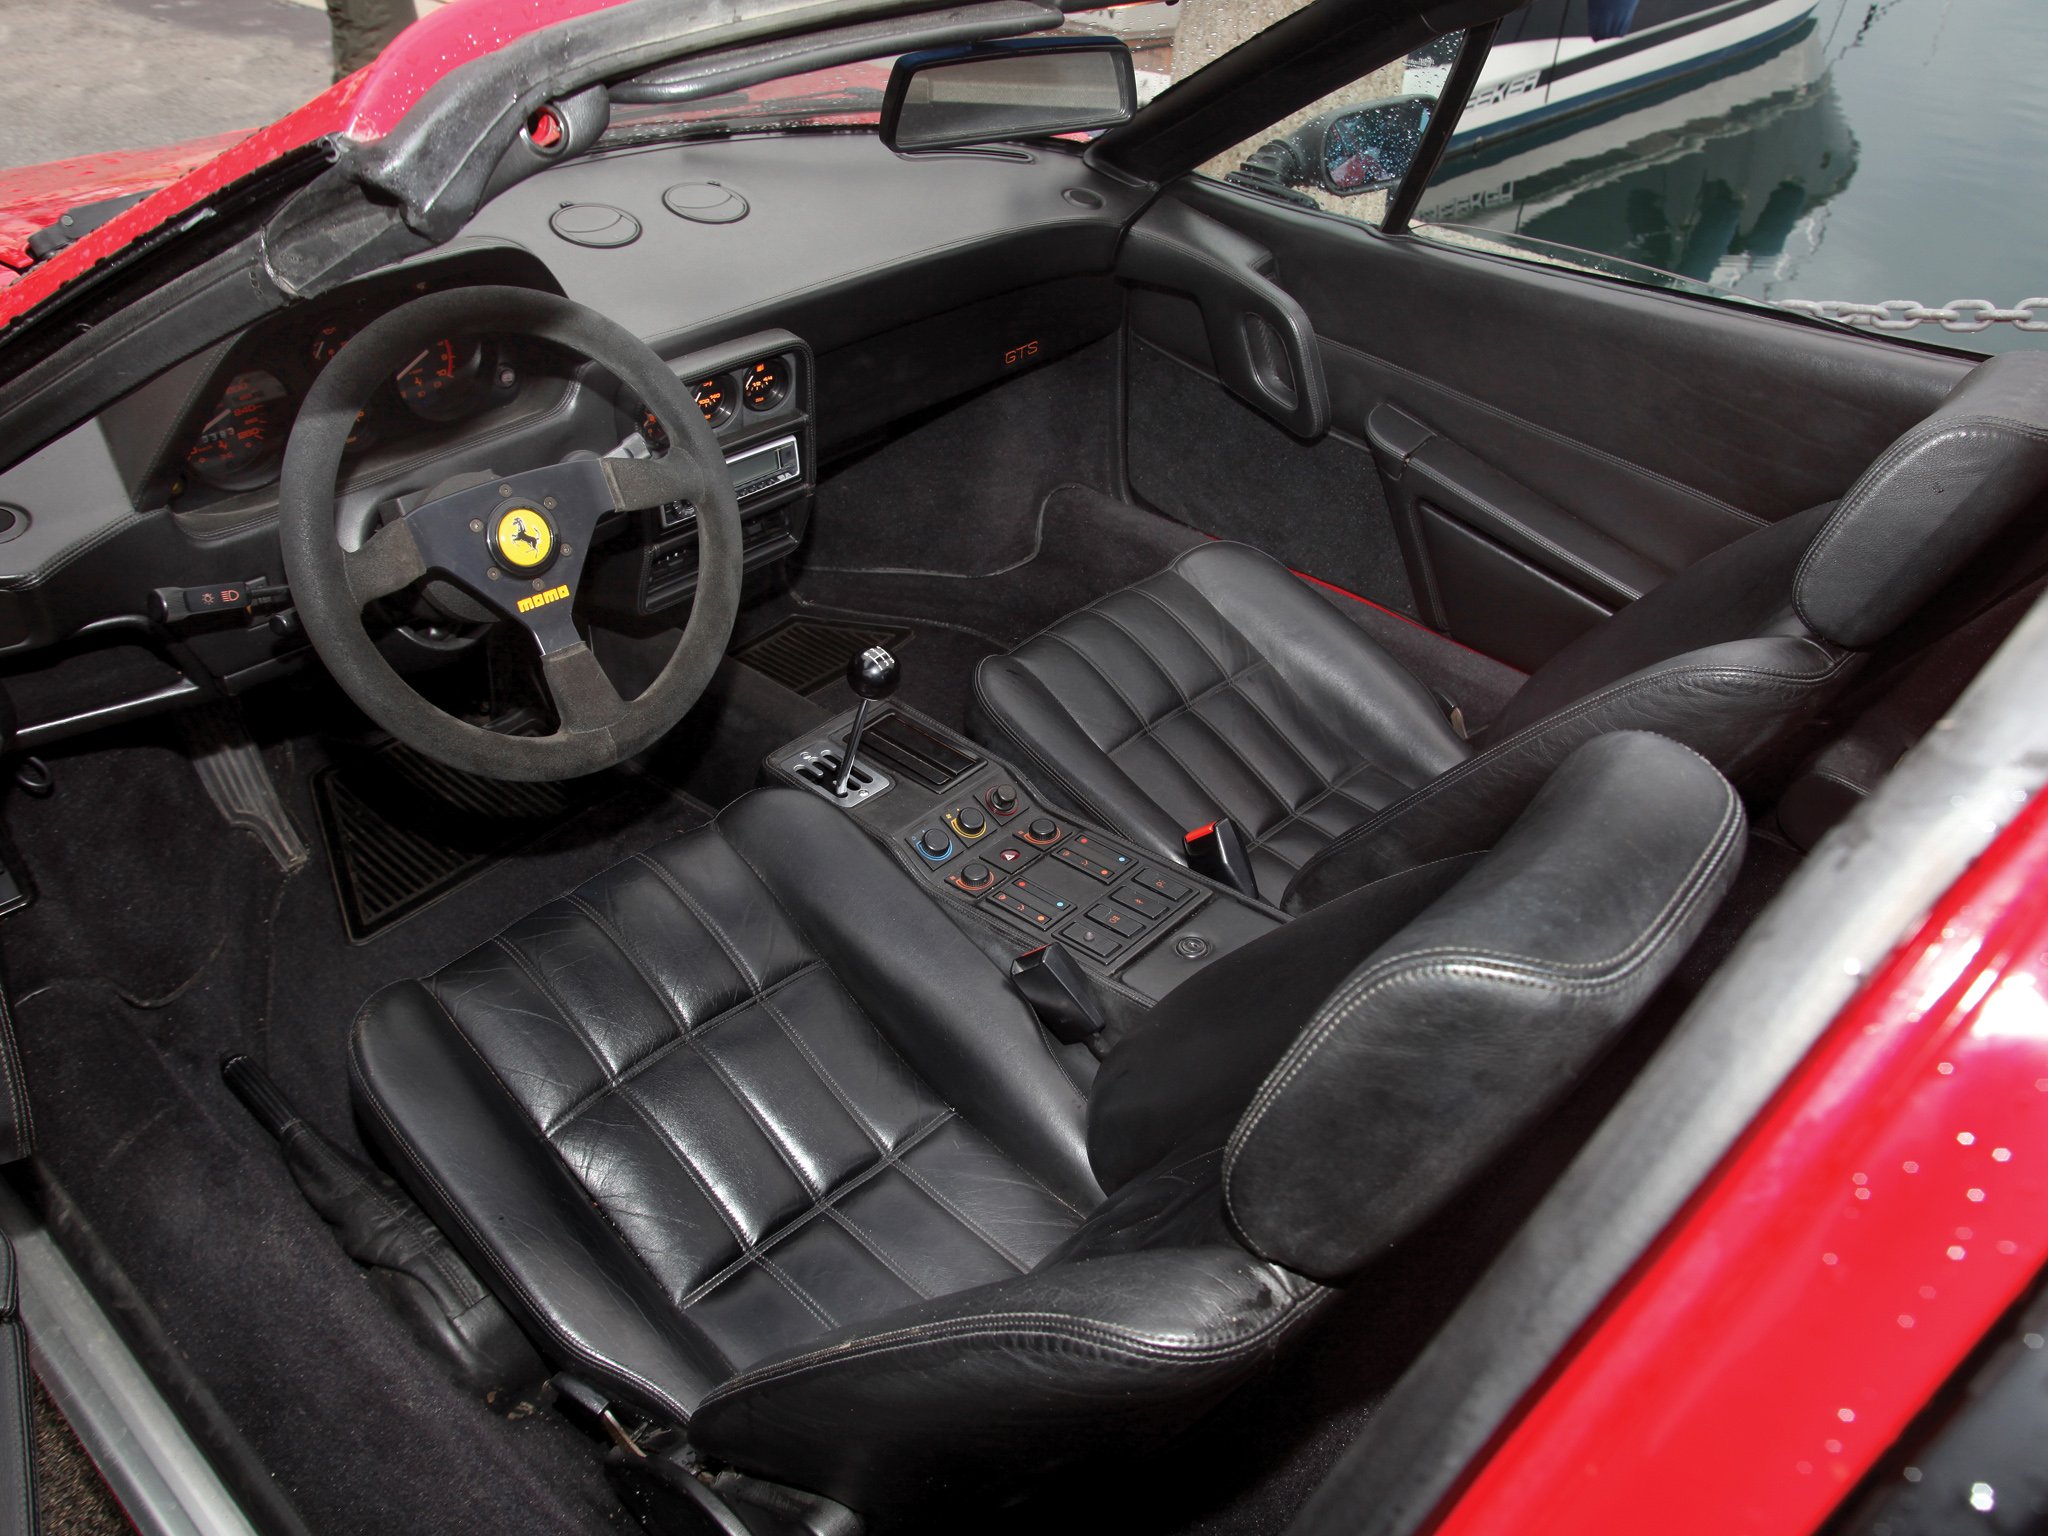 1985 89, Ferrari, 328, Gts, Supercar Wallpaper